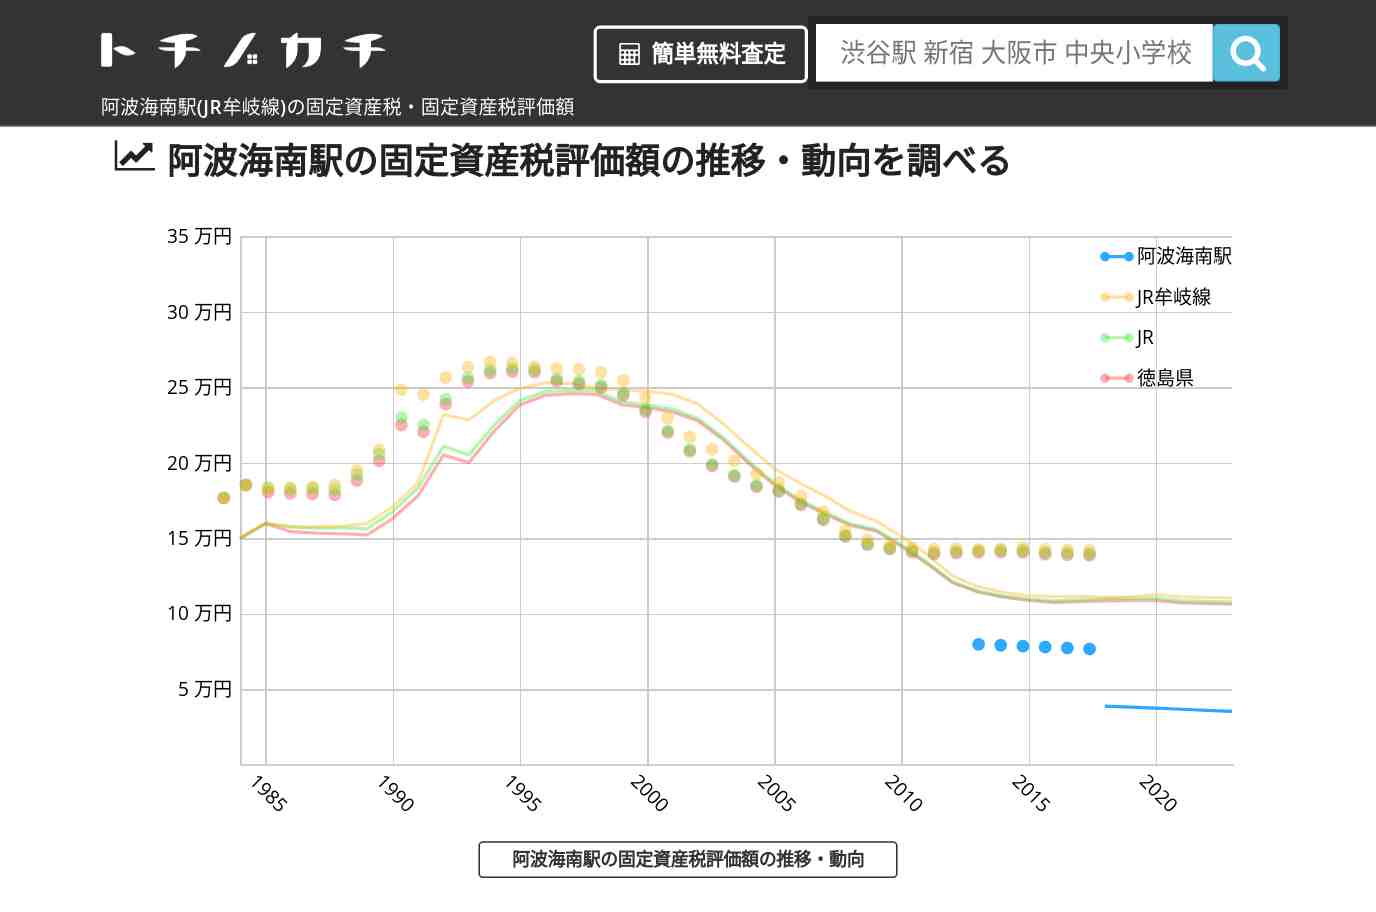 阿波海南駅(JR牟岐線)の固定資産税・固定資産税評価額 | トチノカチ